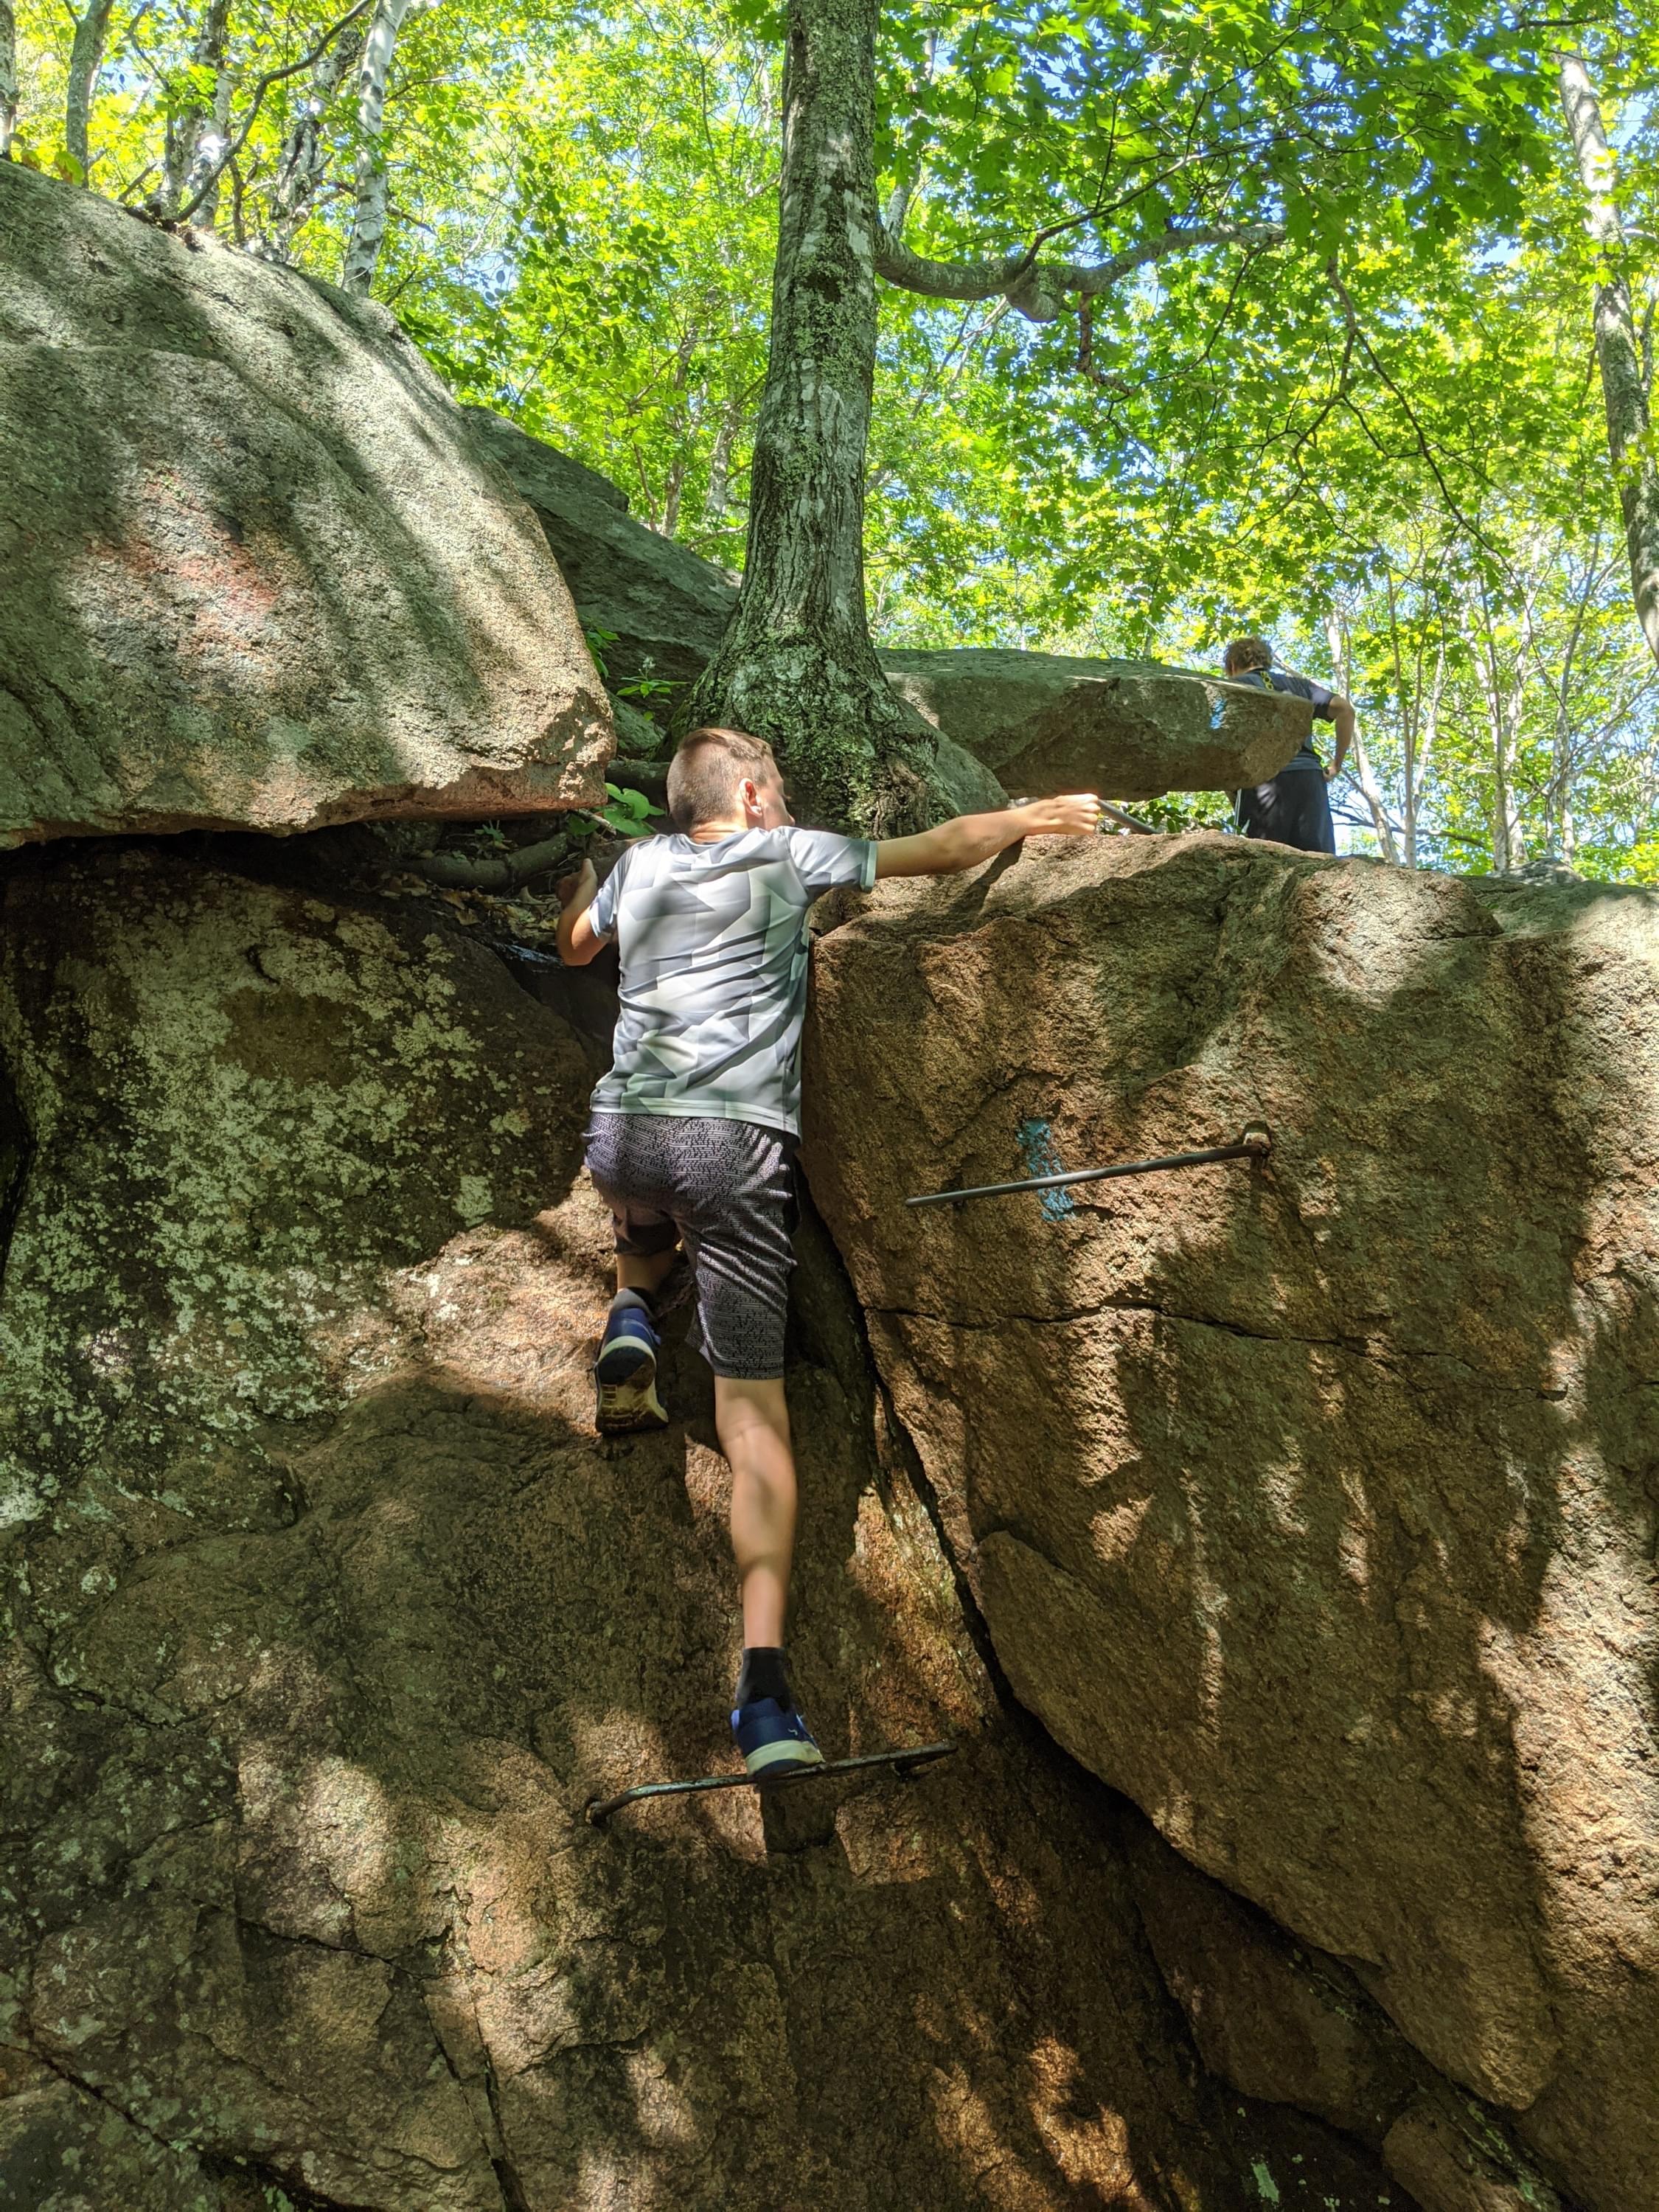 The ’Challenge Rock’ at The Precipice Trail